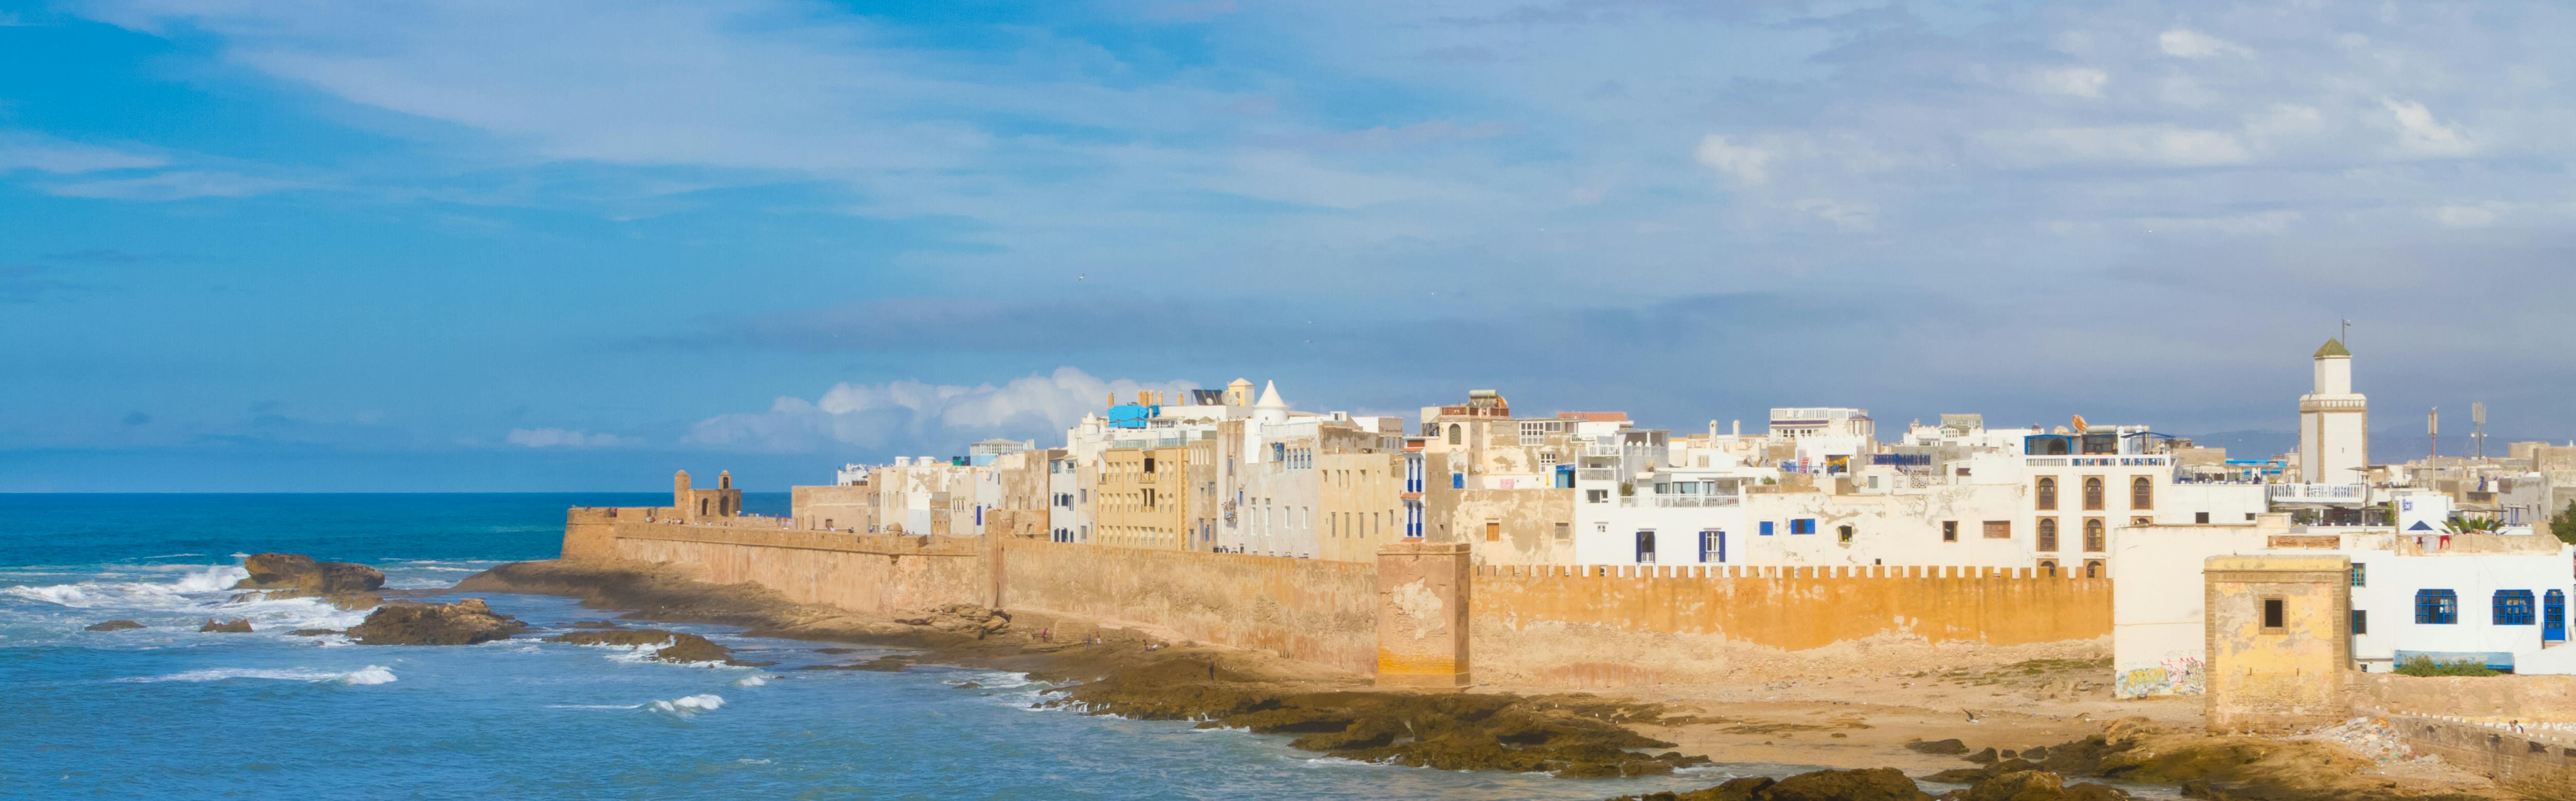 Excursão de dia inteiro a Essaouira saindo de Marrakech